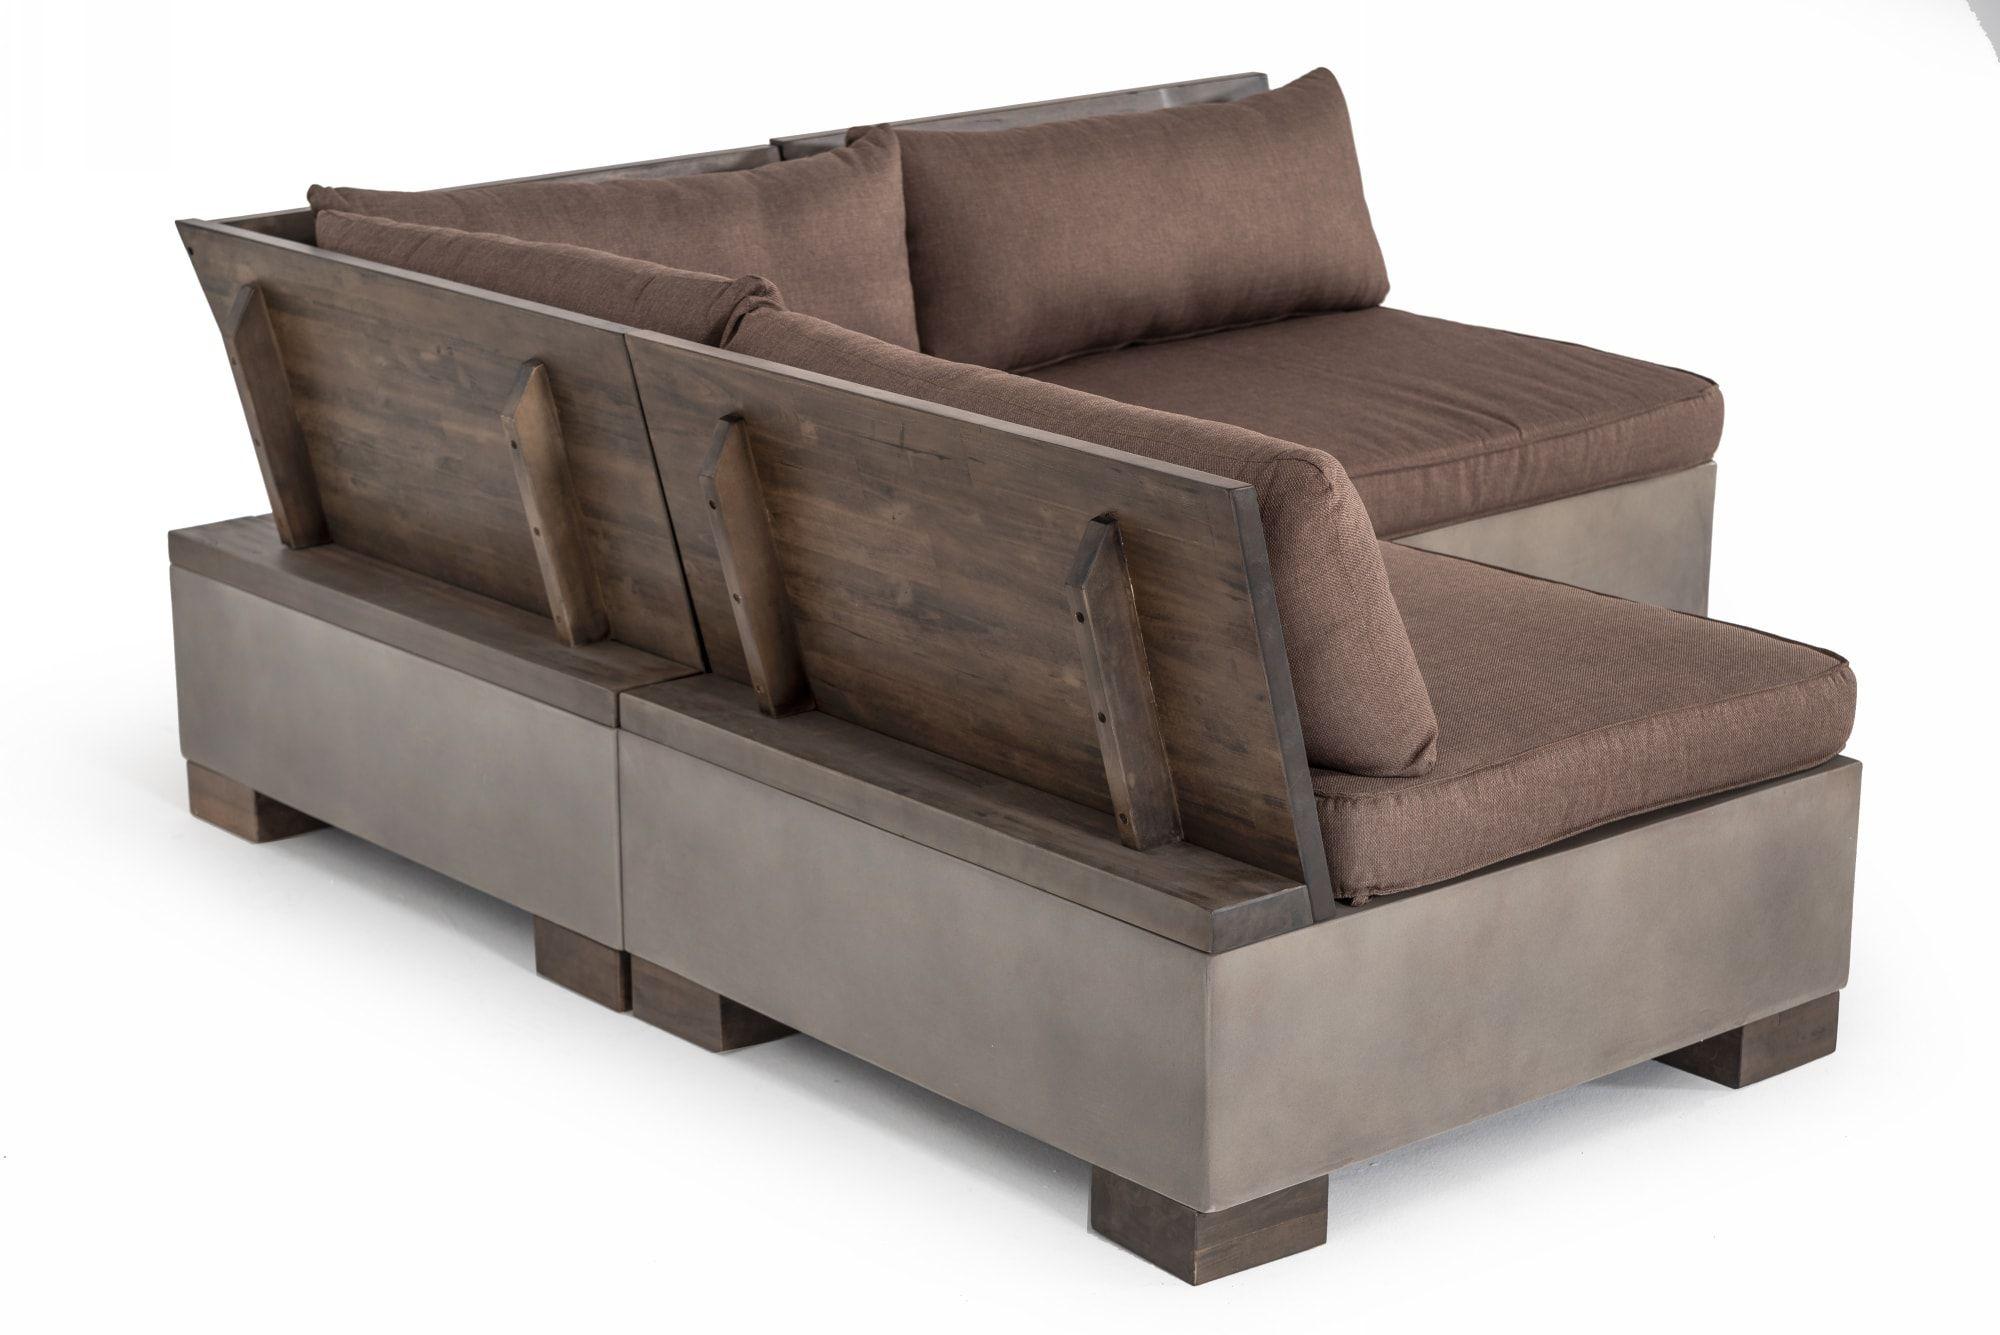 

    
VIG Furniture Modrest Delaware Modular Sectional Sofa Dark Tan/Brown VGLB-RIVI-RECT-SET
